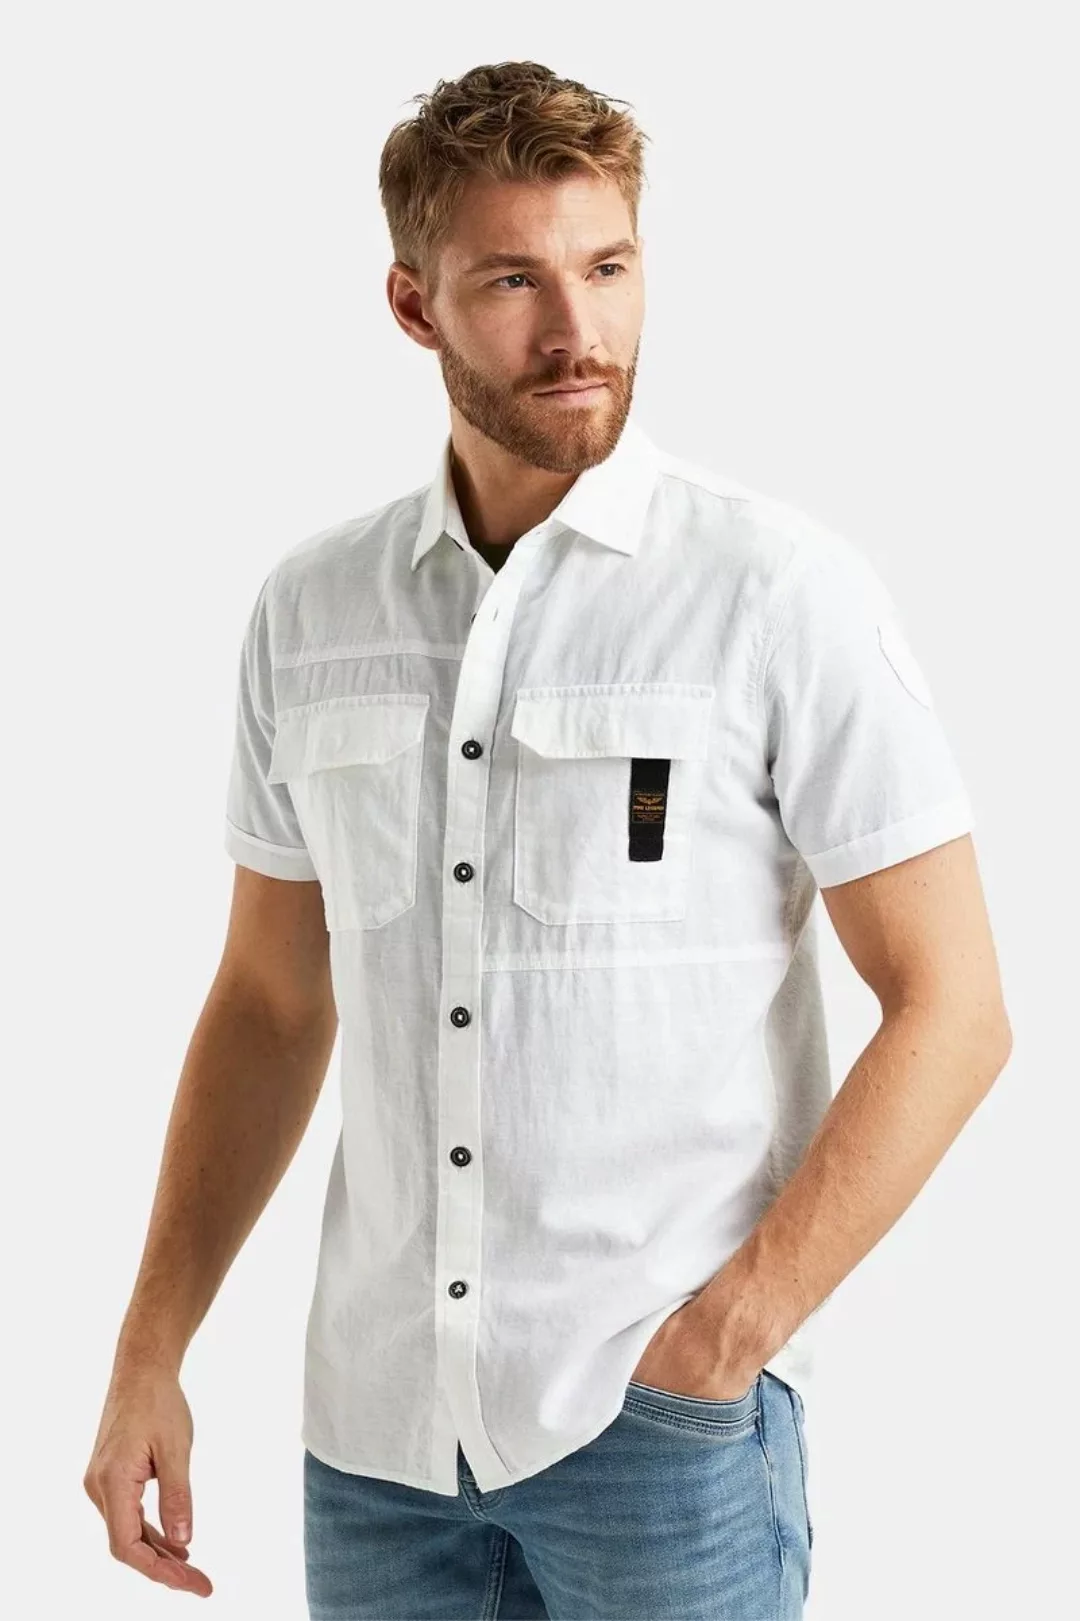 PME Legend Short Sleeve Hemd Leinen Grün - Größe 3XL günstig online kaufen